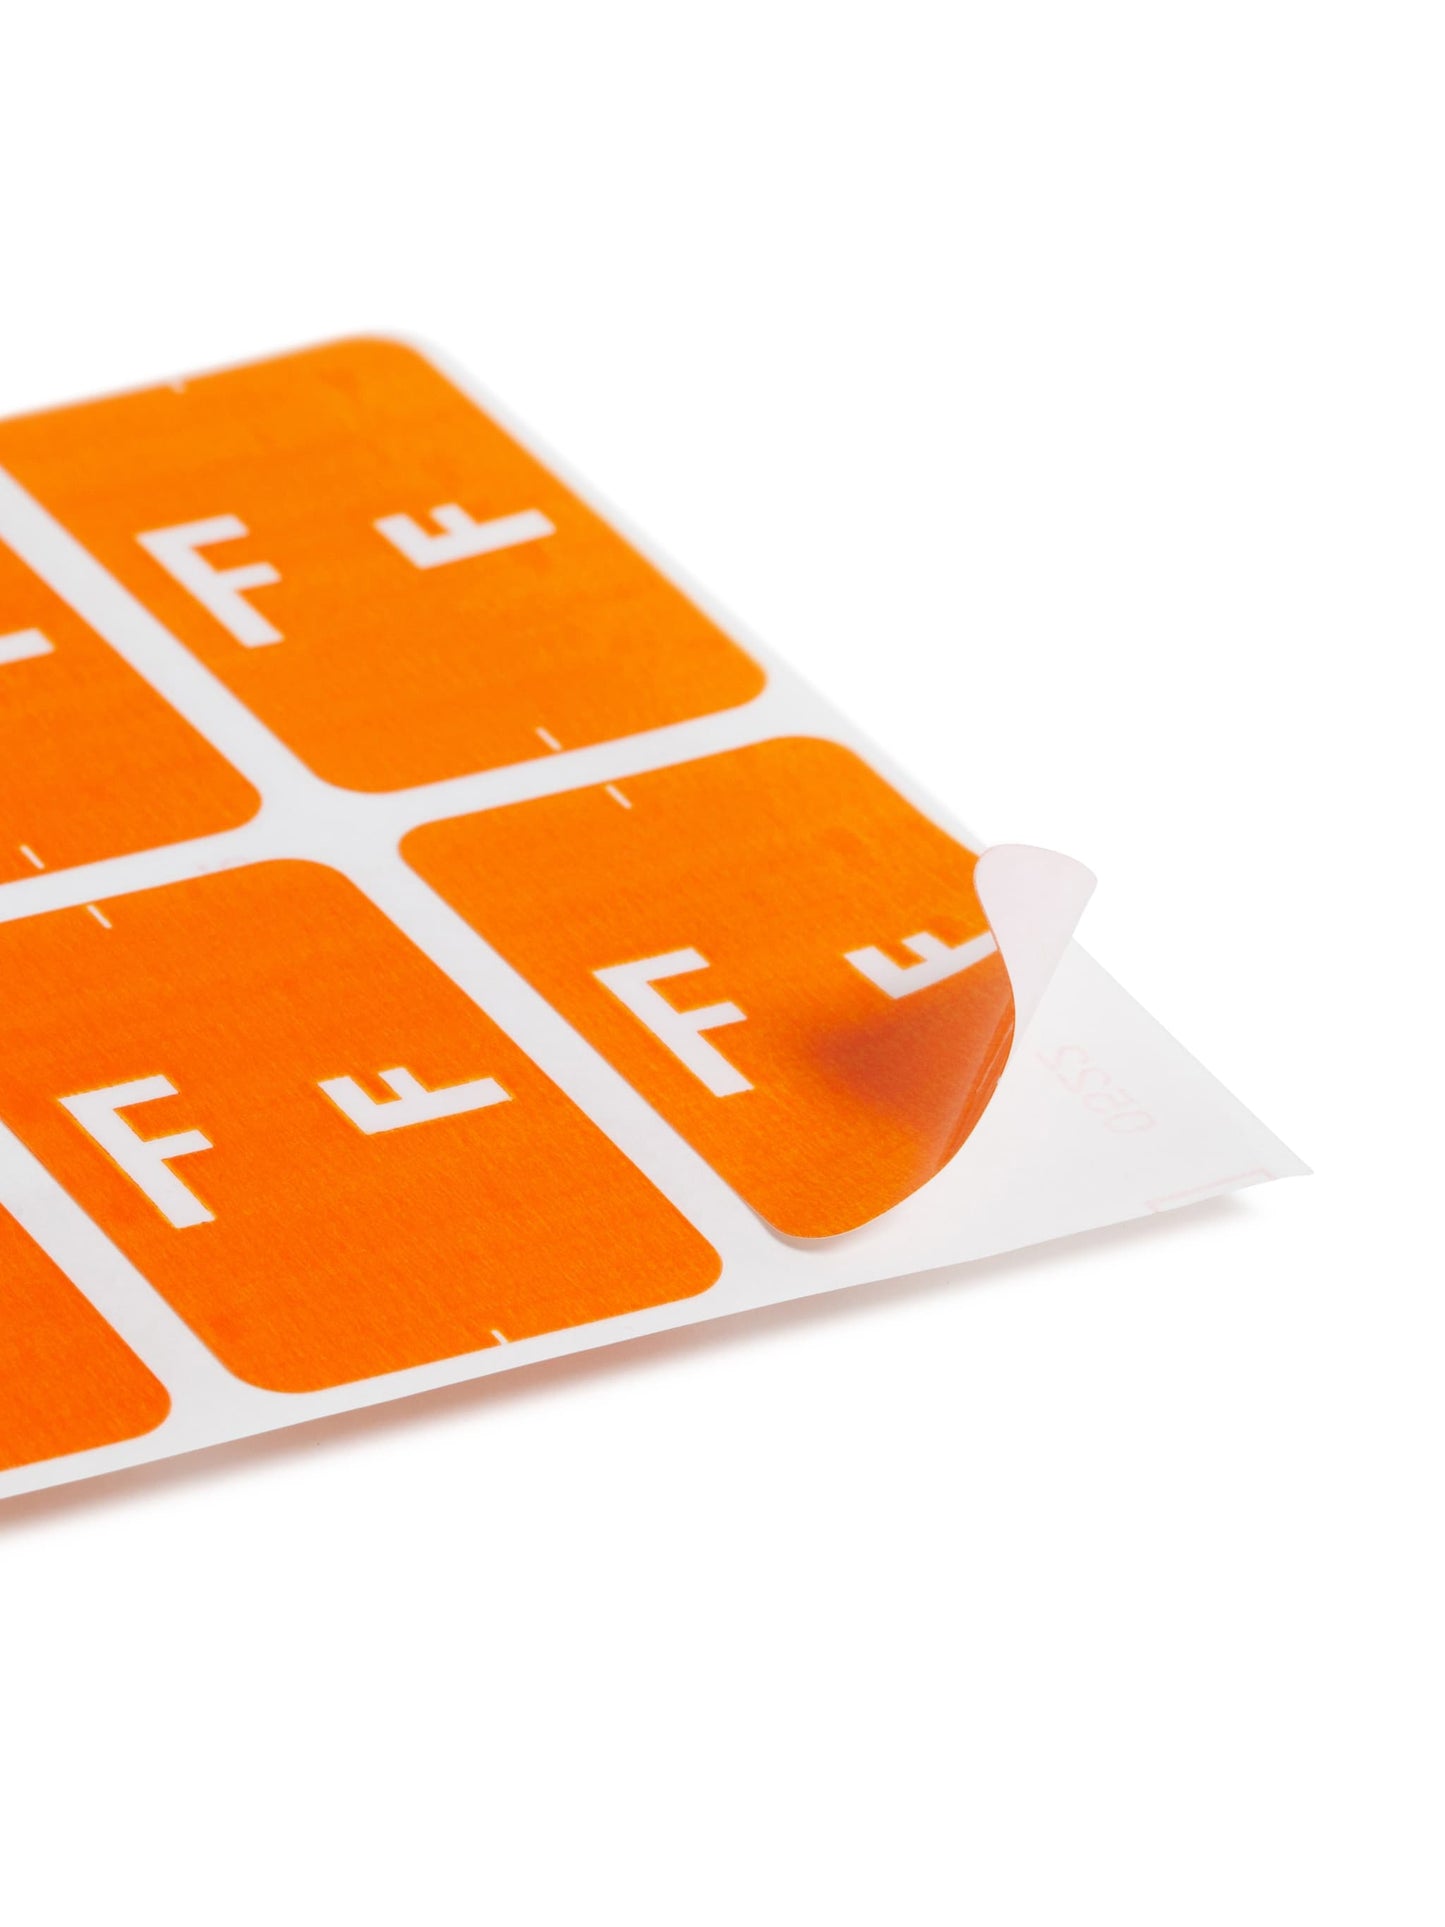 AlphaZ® ACCS Color Coded Alphabetic Labels - Sheets, Orange Color, 1" X 1-5/8" Size, 